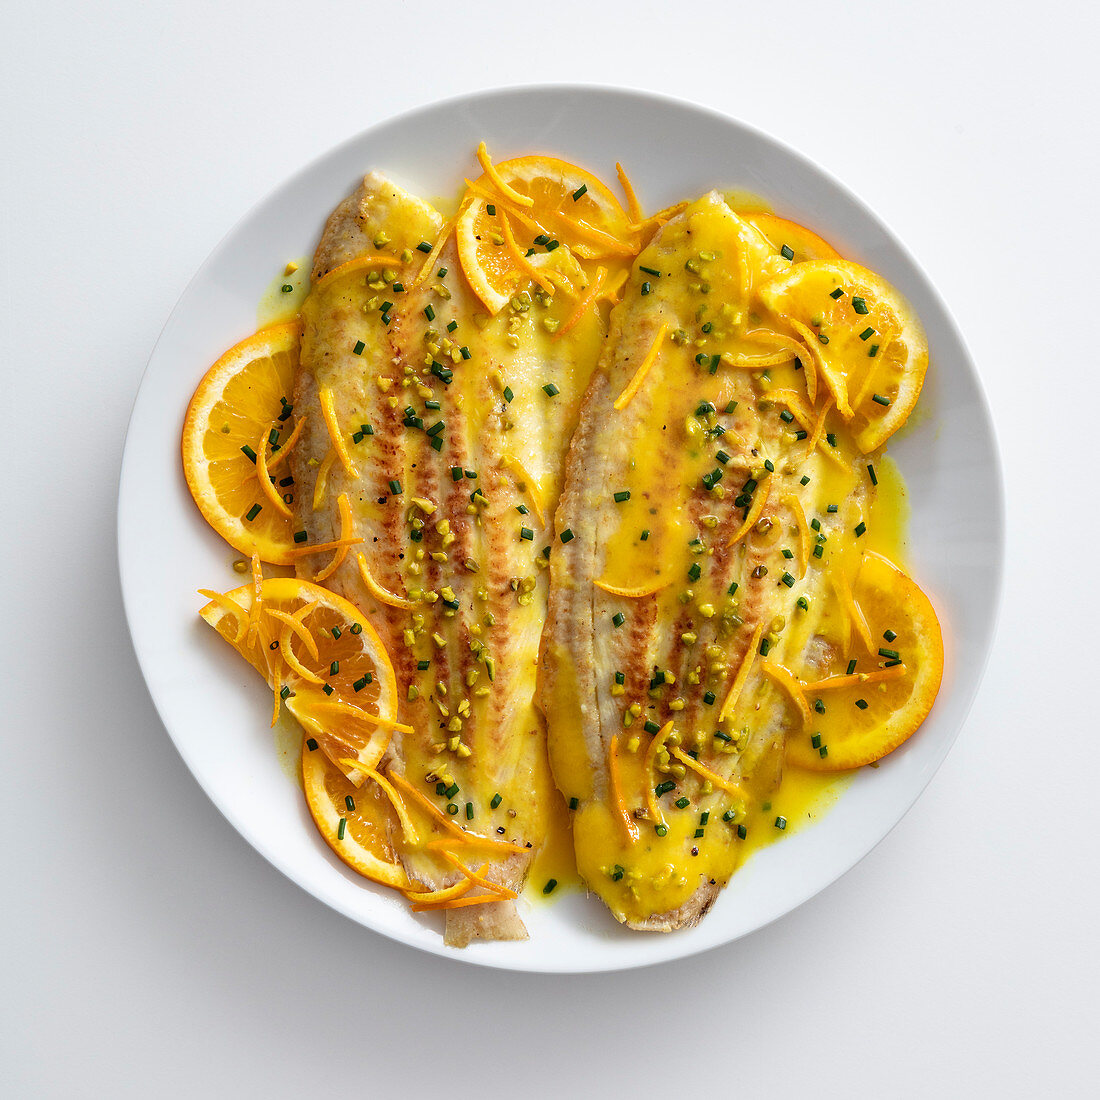 Sole fillets in saffron orange sauce with pistachios